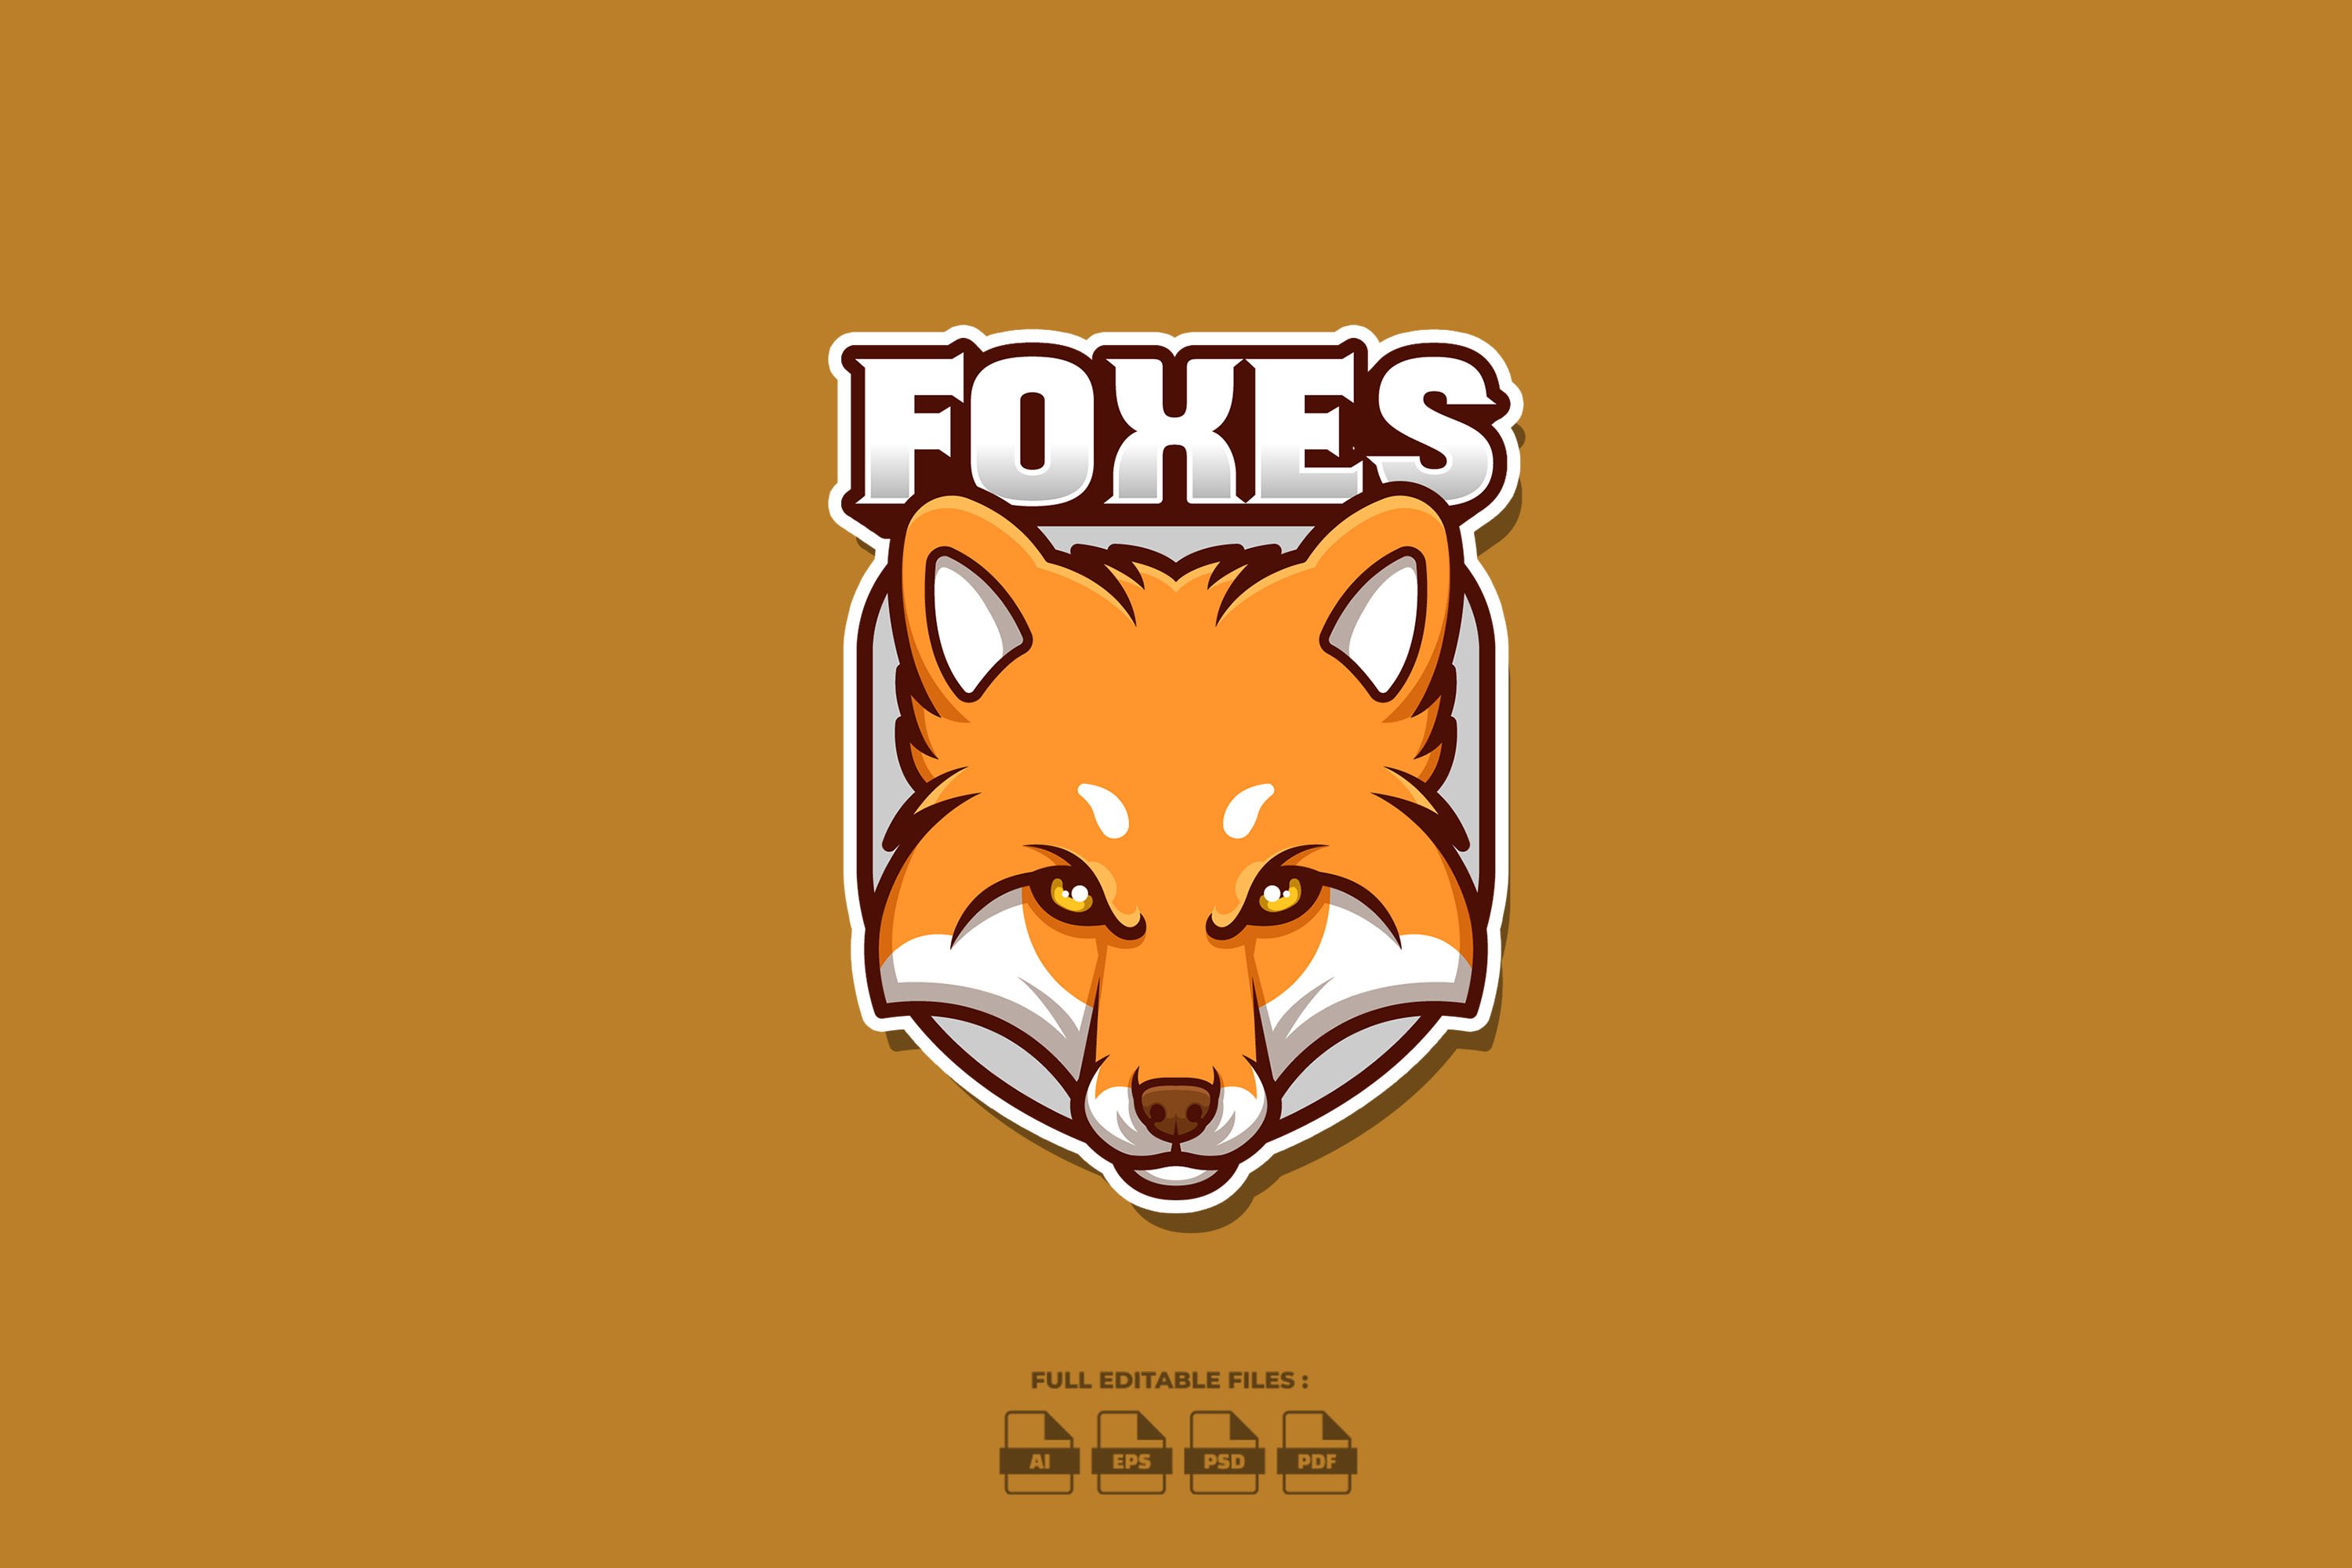 Foxes Creative Cartoon Logo cover image.